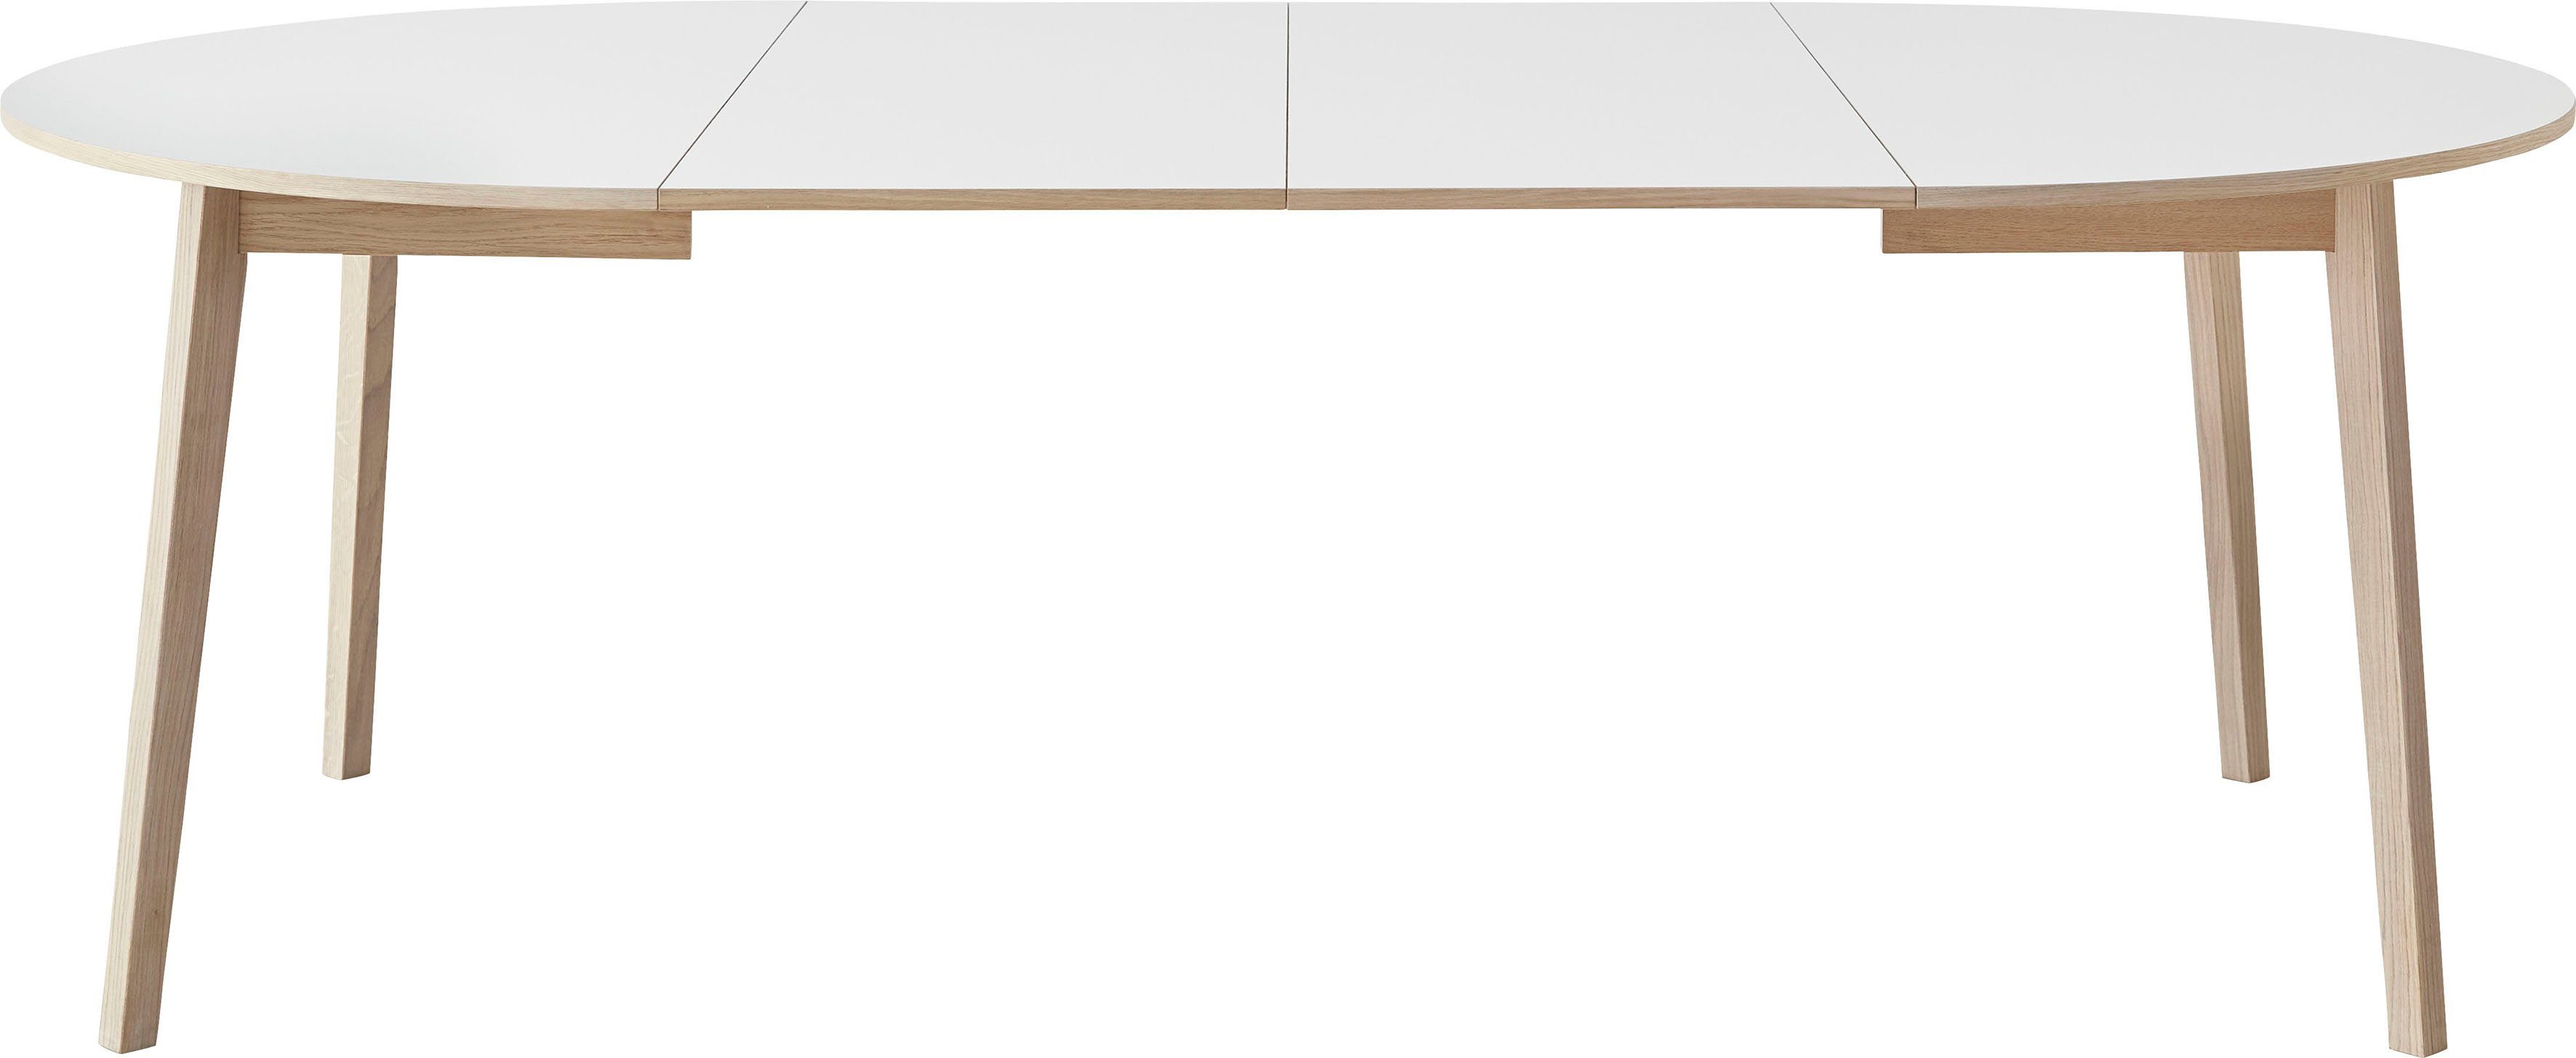 Hammel Furniture Esstisch by Basic cm, Weiß/Naturfarben 2 Hammel aus Massivholz, Ø130/228 Gestell inklusive Einlegeplatten Single